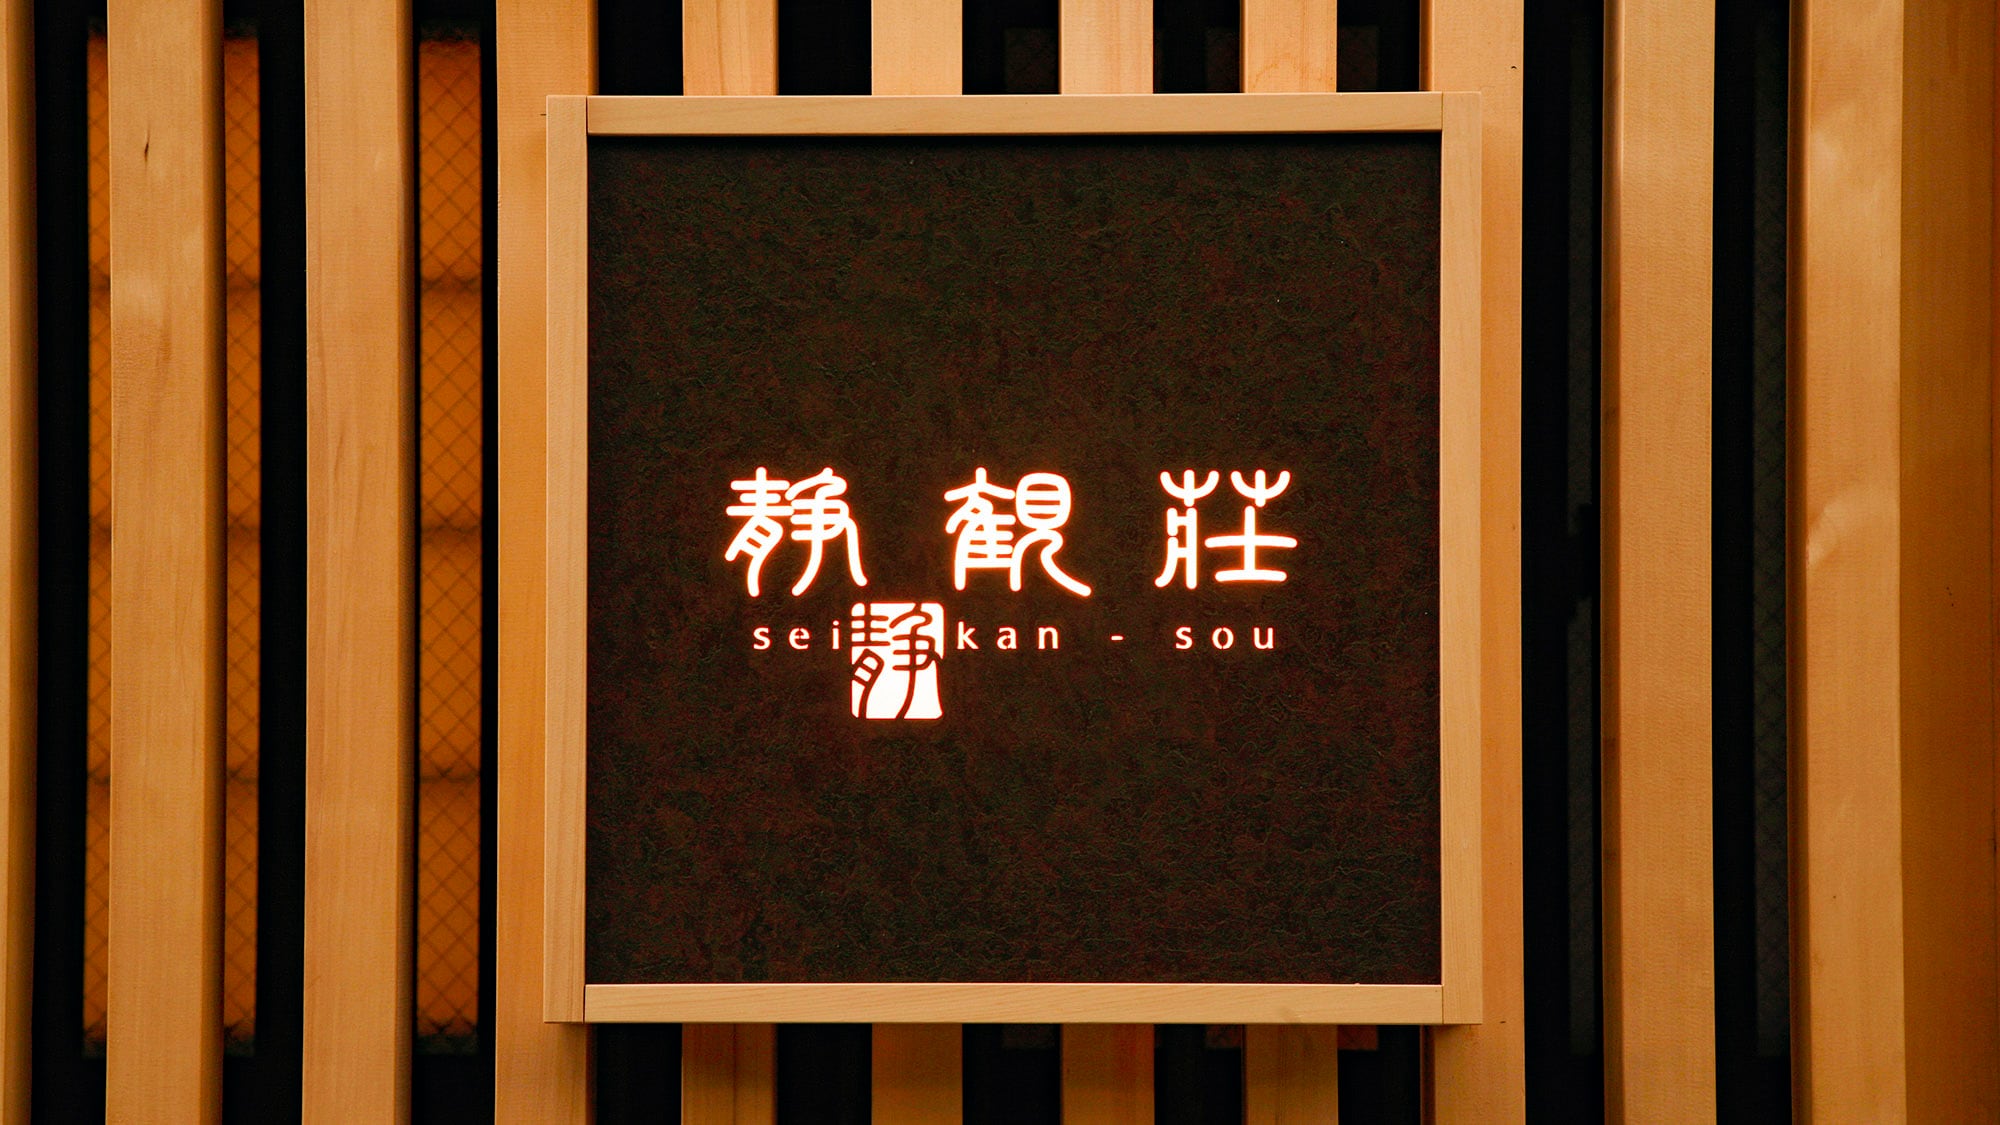 ・등이 빛난 「하코네 유모토 온천 시즈칸소」의 간판